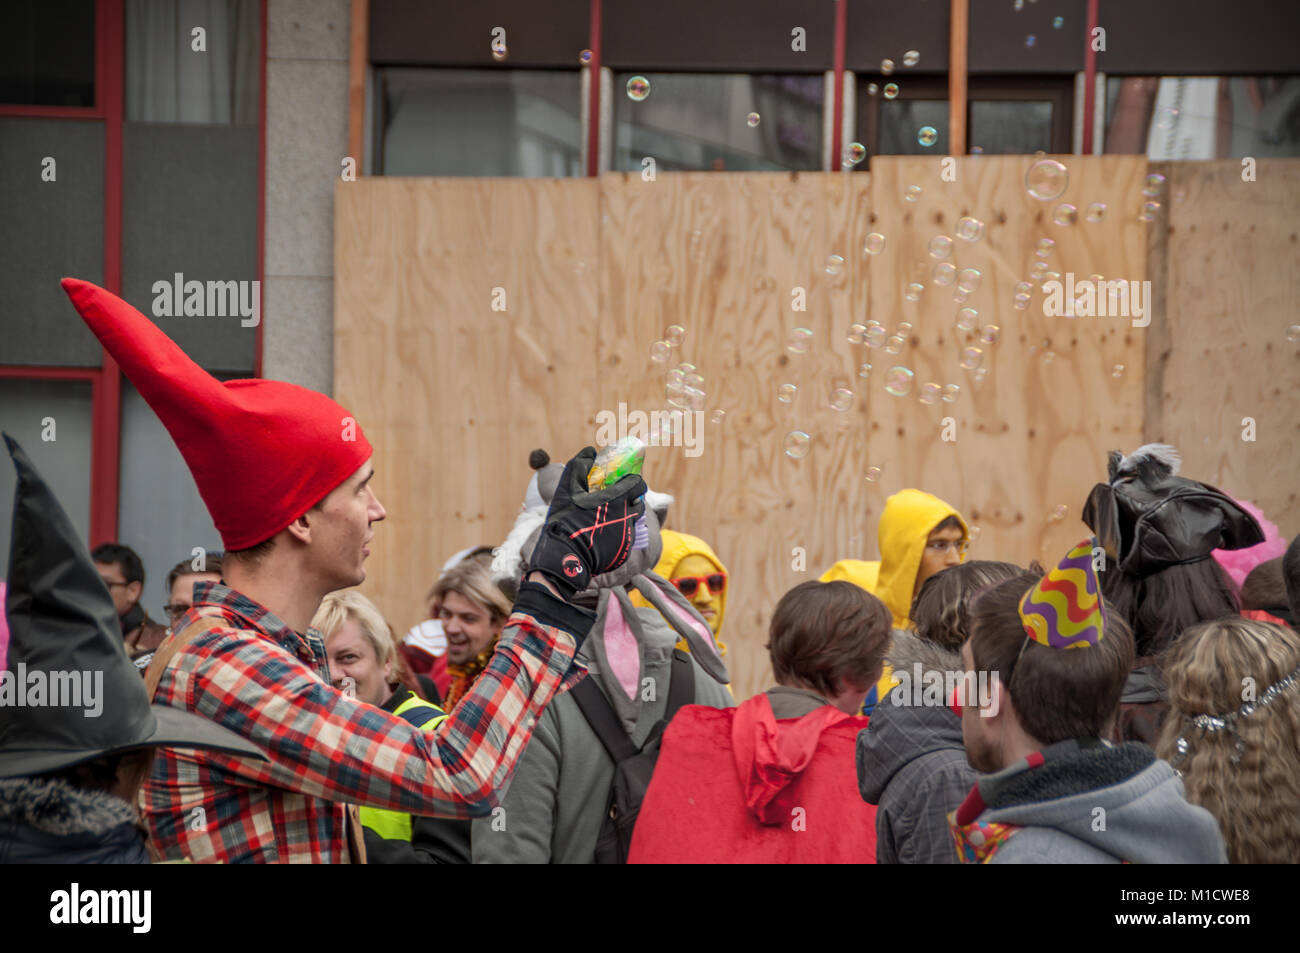 Köln, Deutschland - 14. März 2014: eine verschleierte Menschen als ein gartenzwerg schießt Blasen an eine Gruppe von Menschen Stockfoto